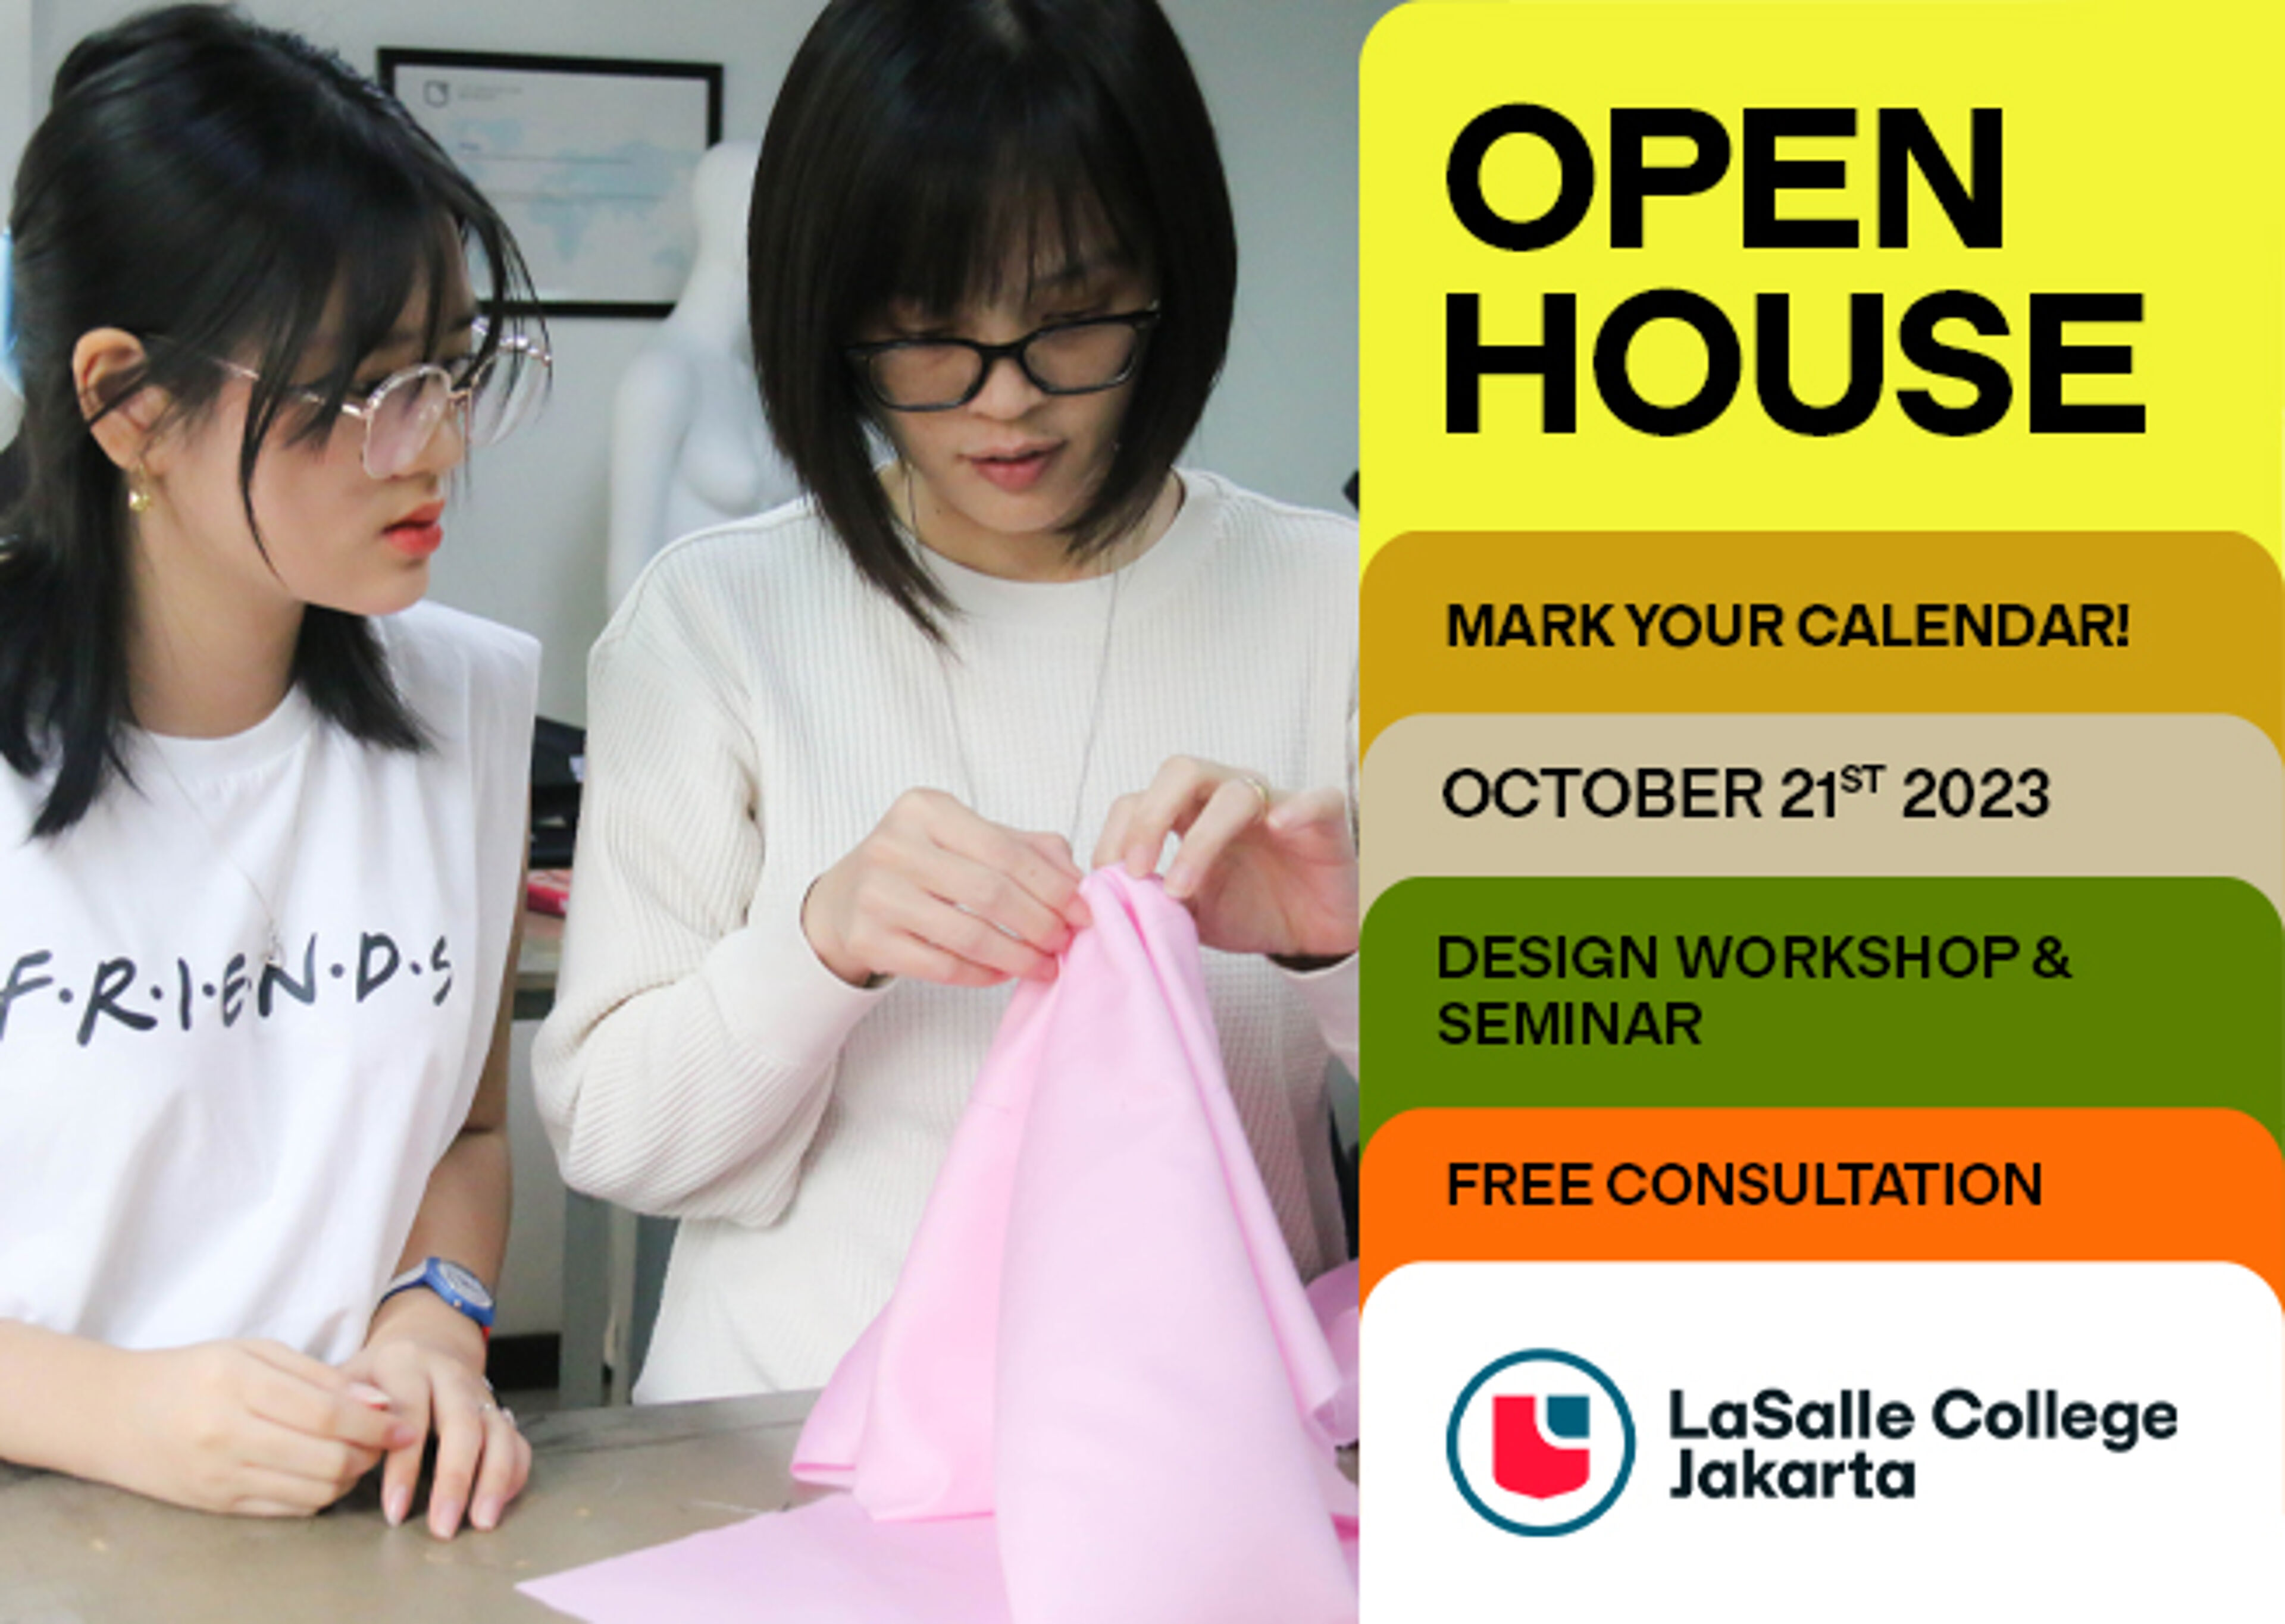 Dua orang yang fokus bekerja pada proyek kain, mengiklankan acara Open House LaSalle College Jakarta dengan workshop dan konsultasi gratis pada 21 Oktober 2023.